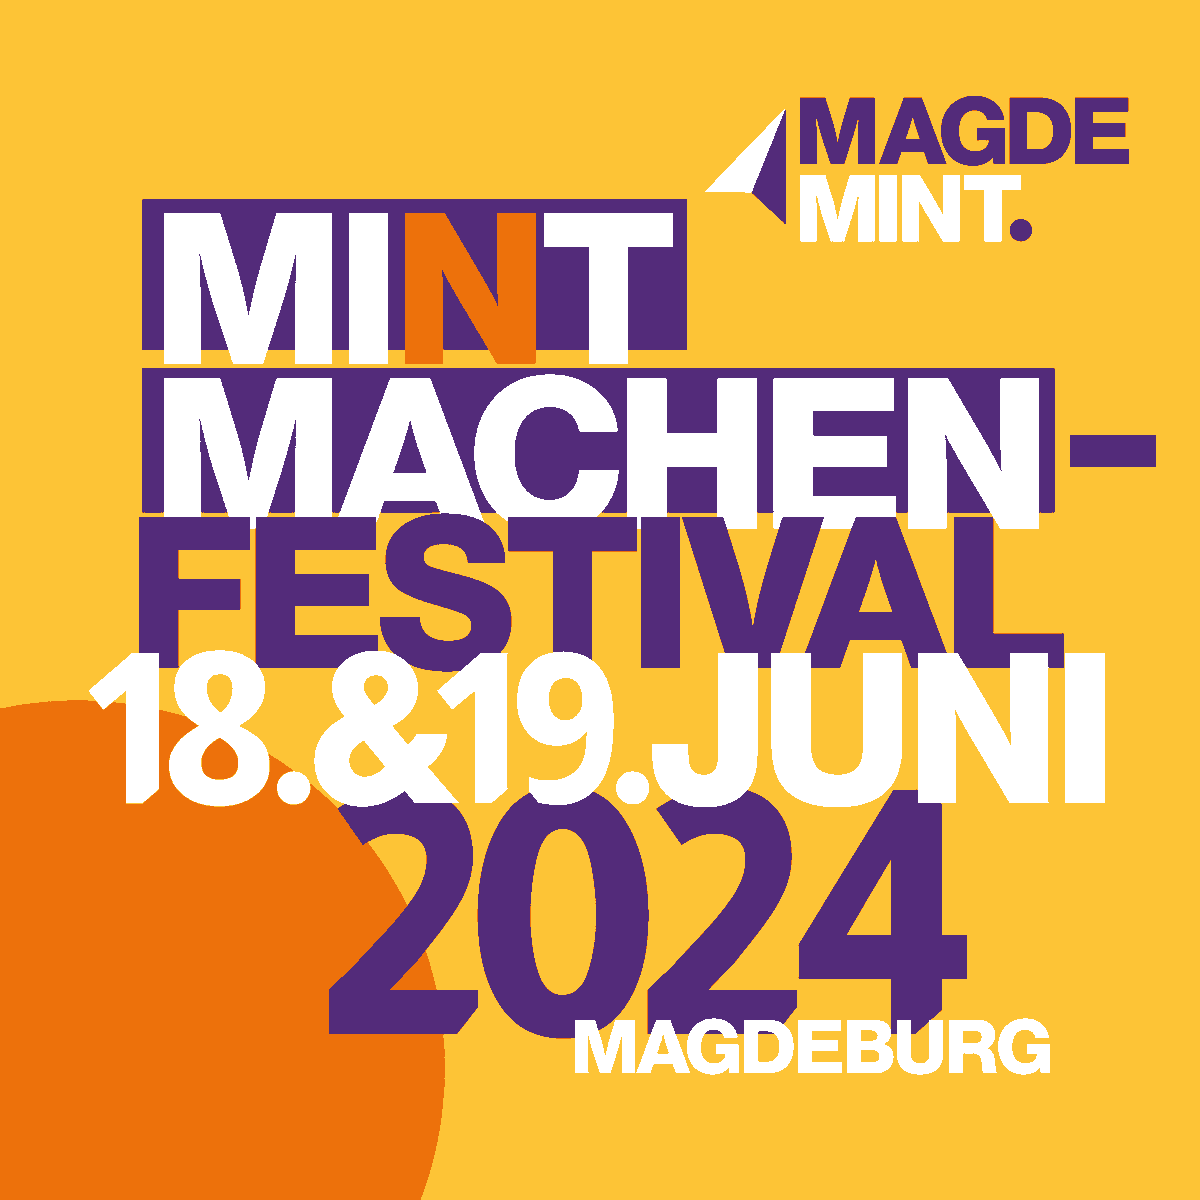 Ihr kommt aus #Magdeburg oder Umgebung & interessiert euch für #MINT-Themen? Dann reserviert euch schon mal den 18./19.06. (Dienstag und Mittwoch) im Kalender, denn dort findet das diesjährige #MINTmachen-Festival von #MagdeMINT in der @FestungMark statt. magdeburg.de/mintmachen